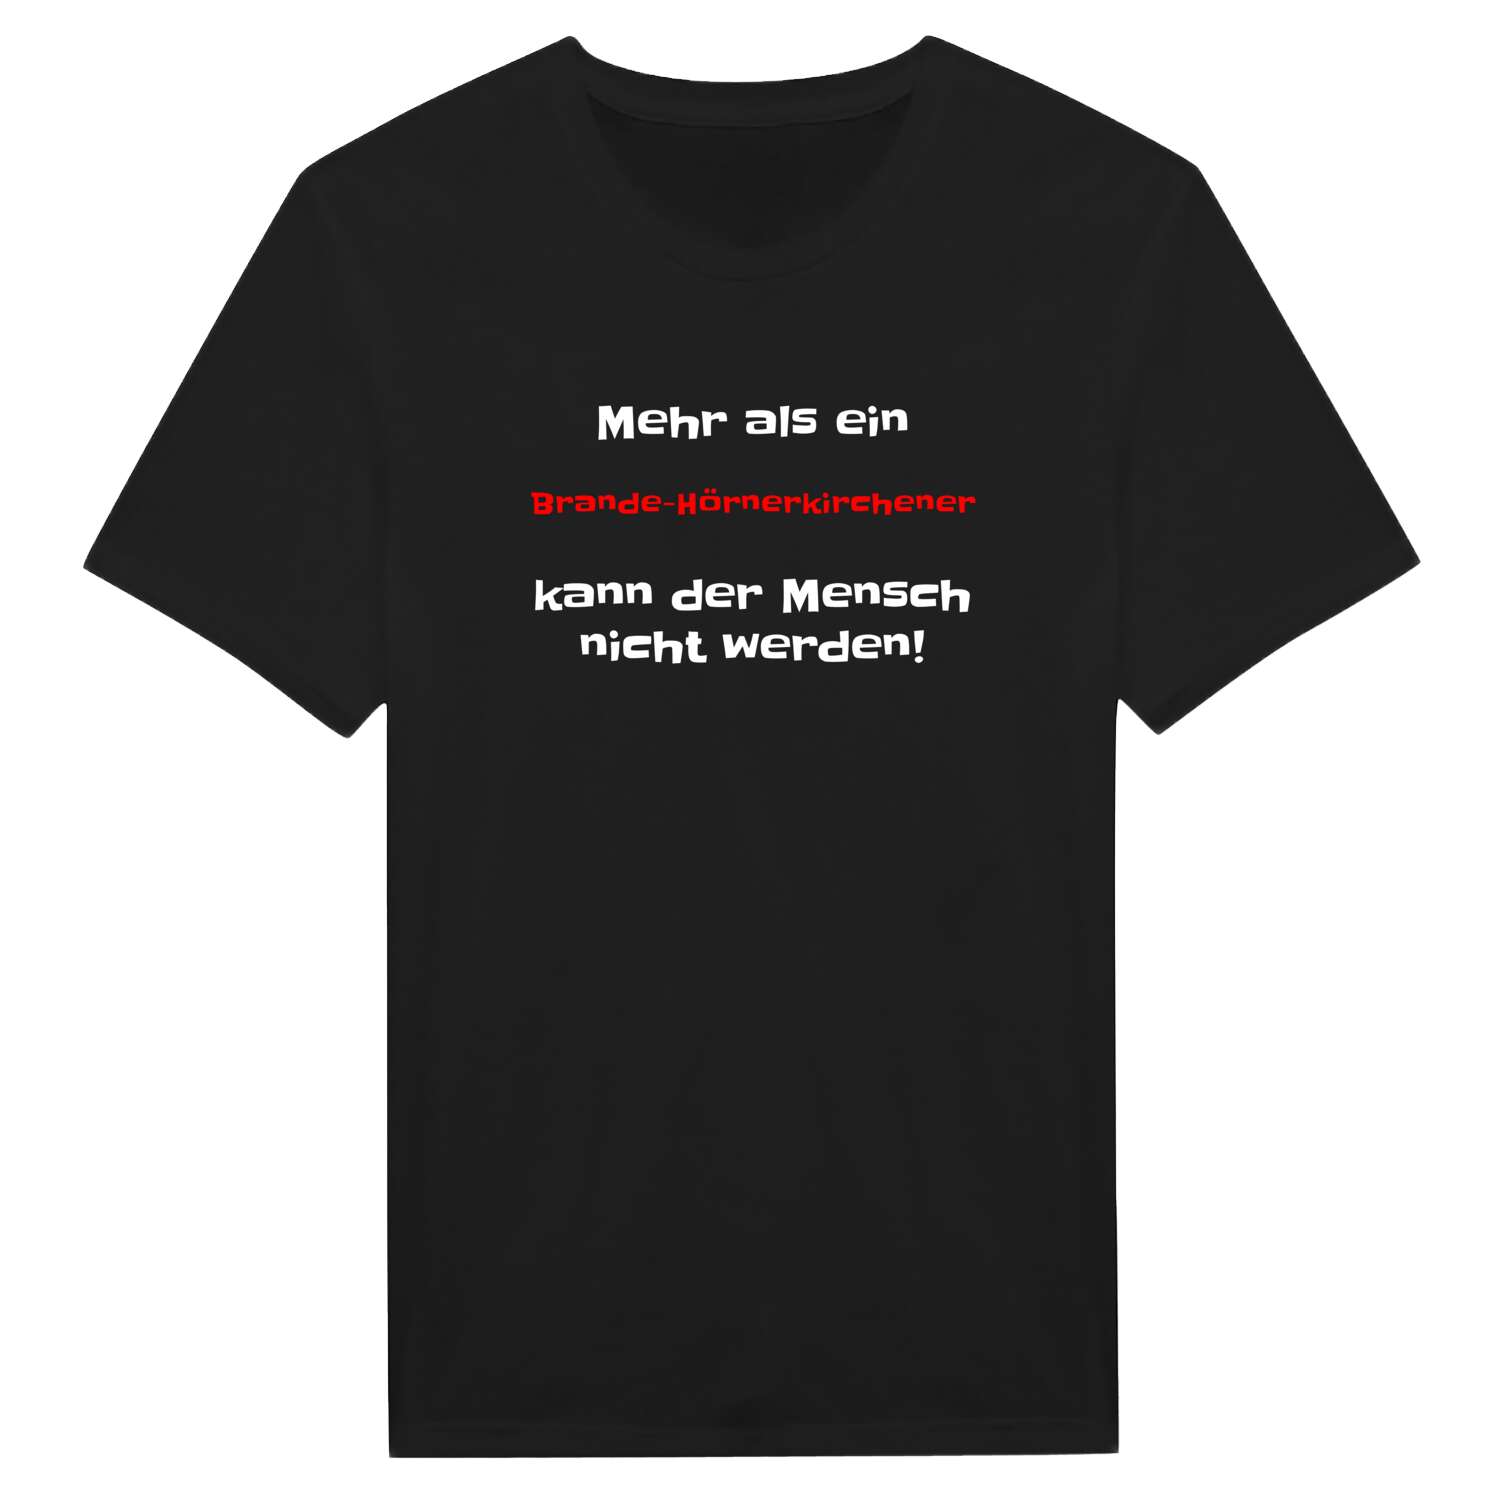 Brande-Hörnerkirchen T-Shirt »Mehr als ein«